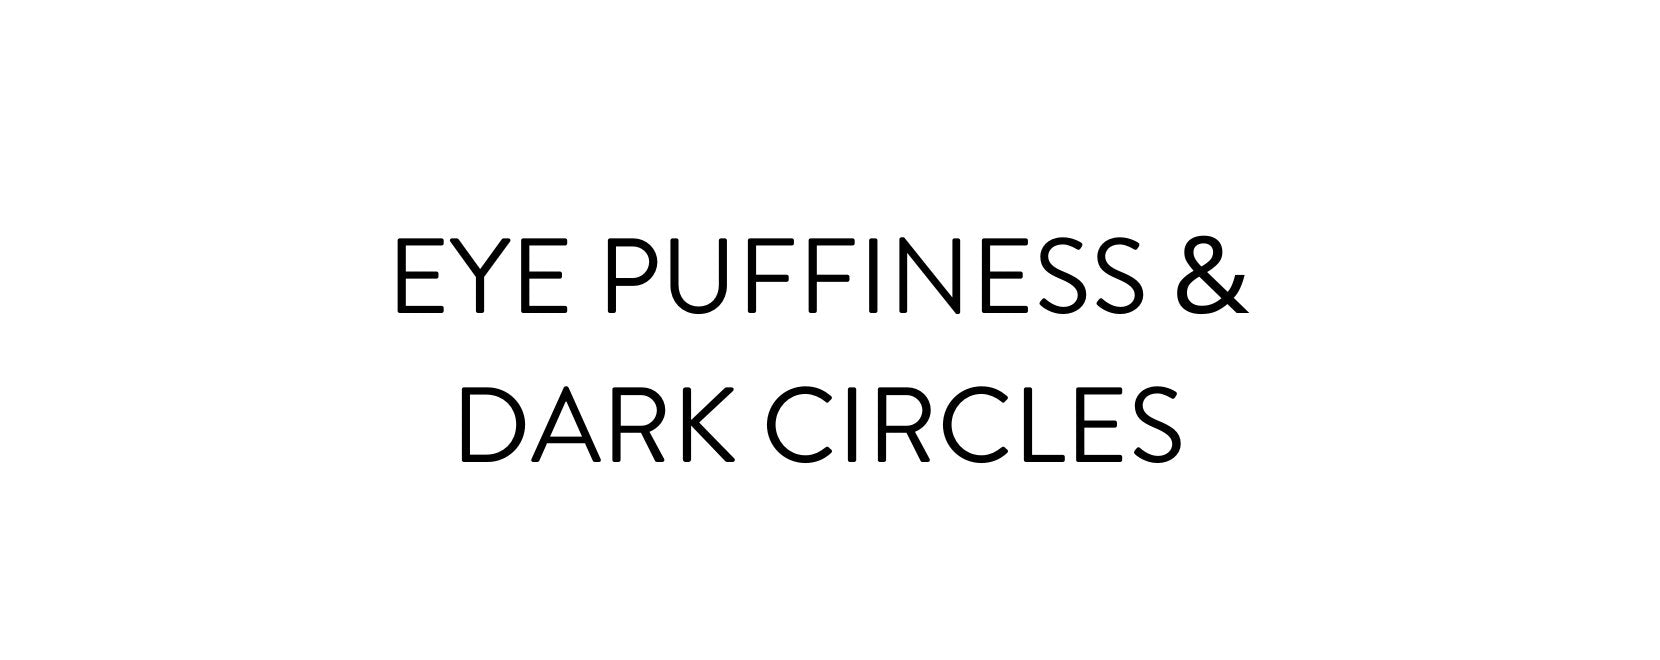 Eye Puffiness & Dark Circles